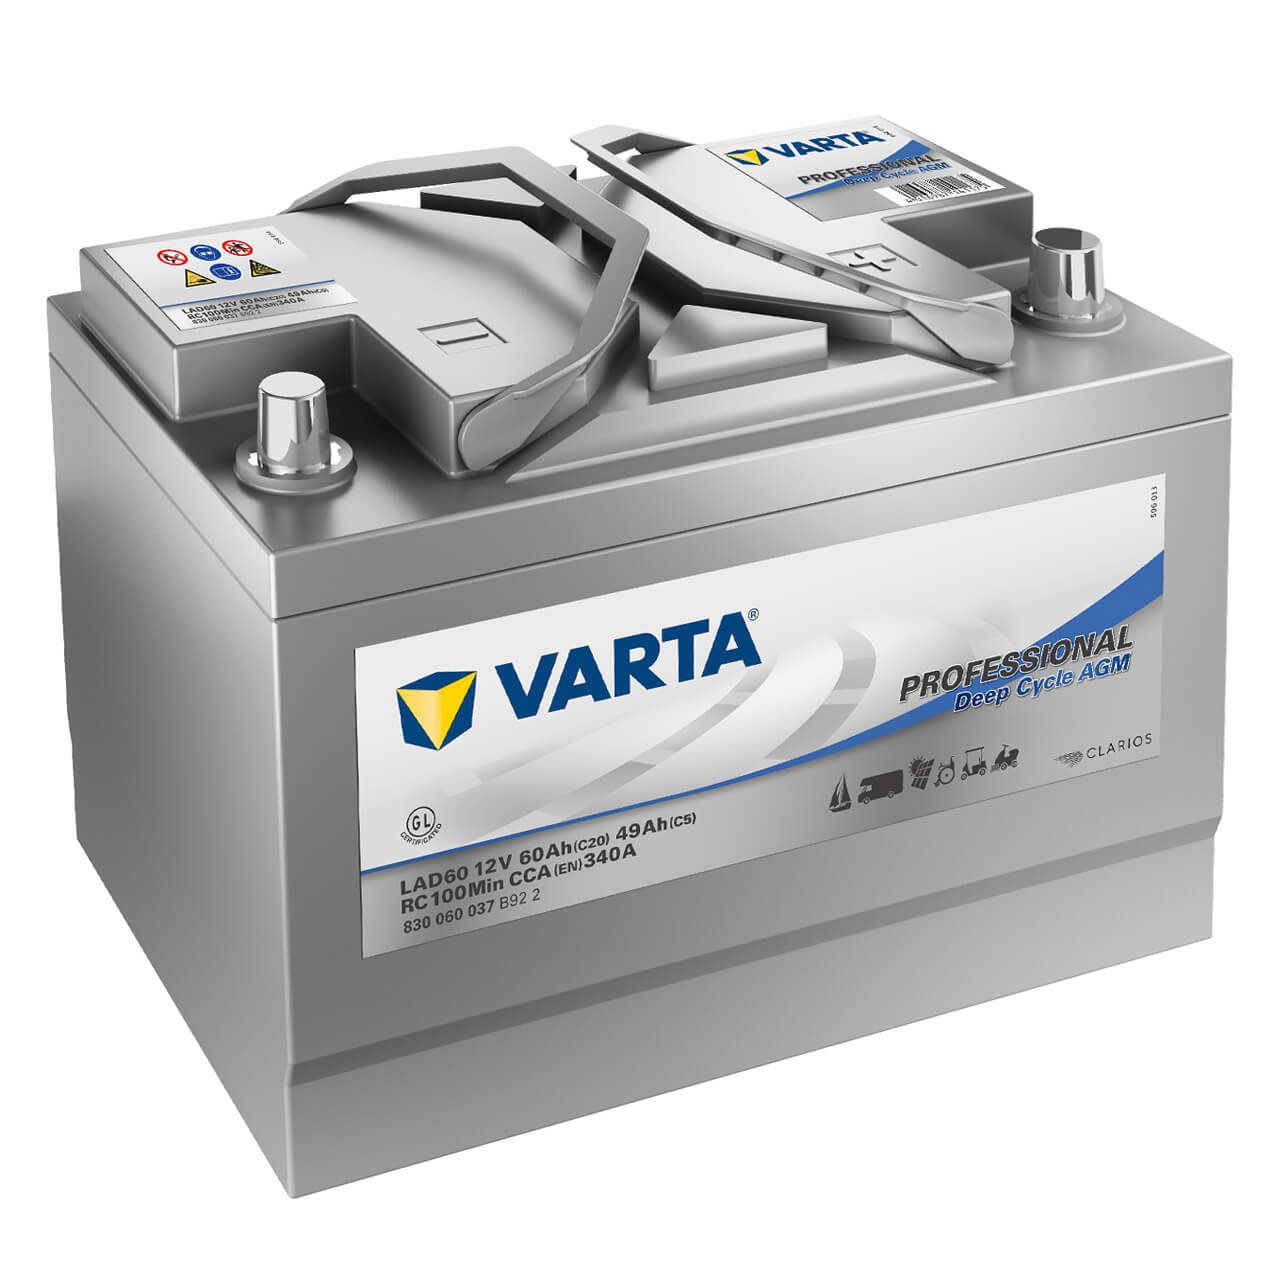 Varta LAD60A Professional DC AGM 12V 60Ah 370A/EN